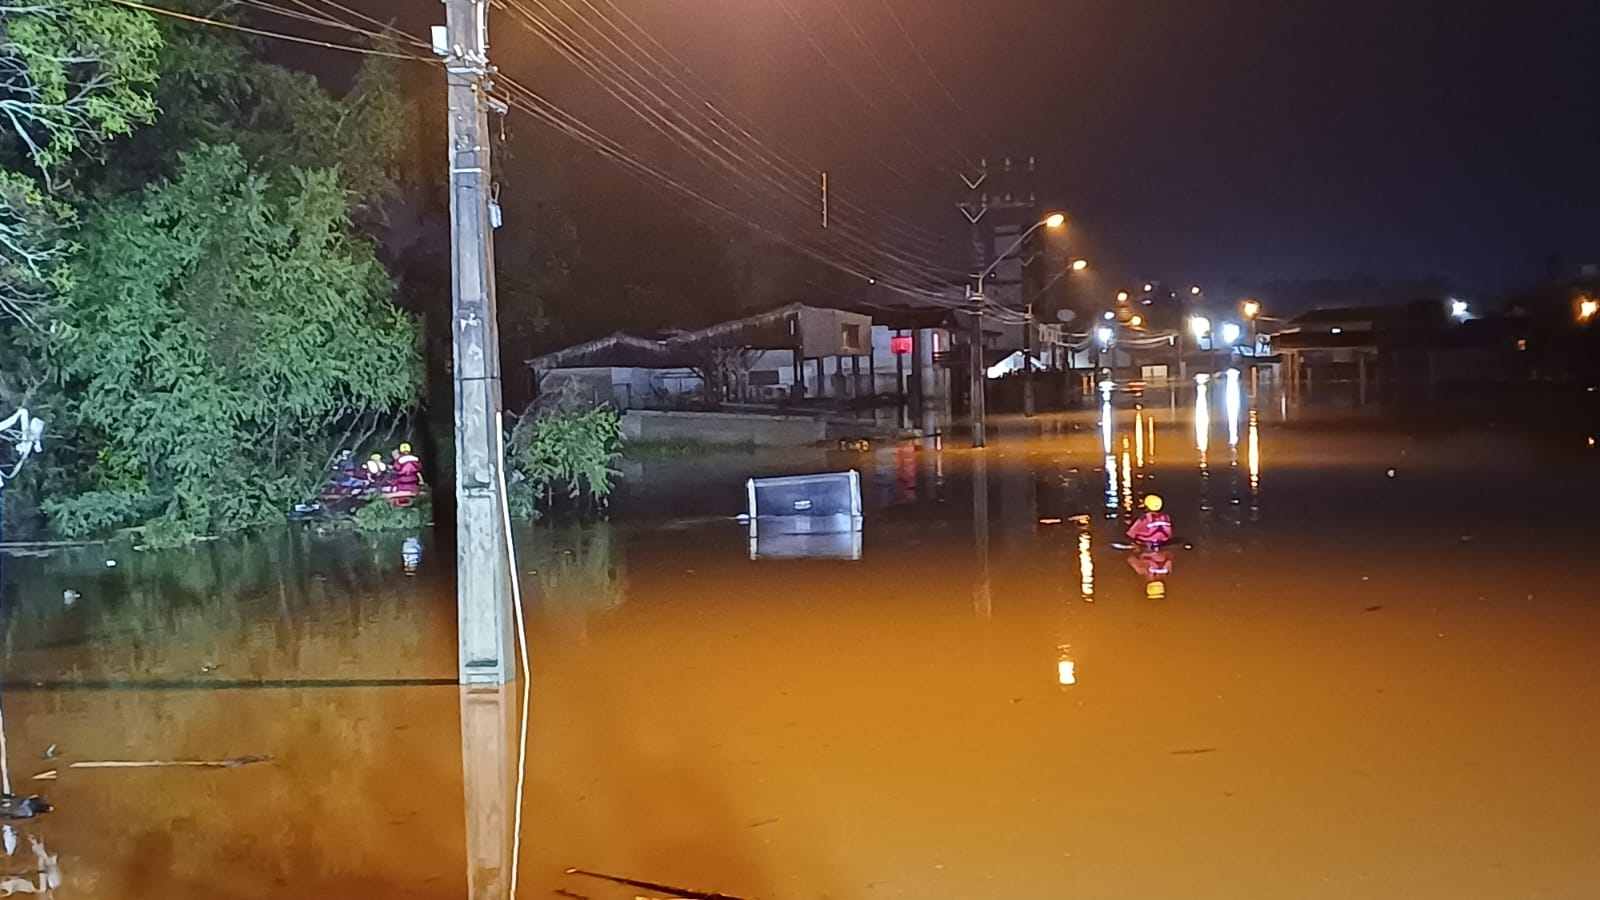 De acordo com o Corpo de Bombeiros, foram registradas ocorrências em 72 municípios de Santa Catarina que envolvem desastres relacionados às chuvas